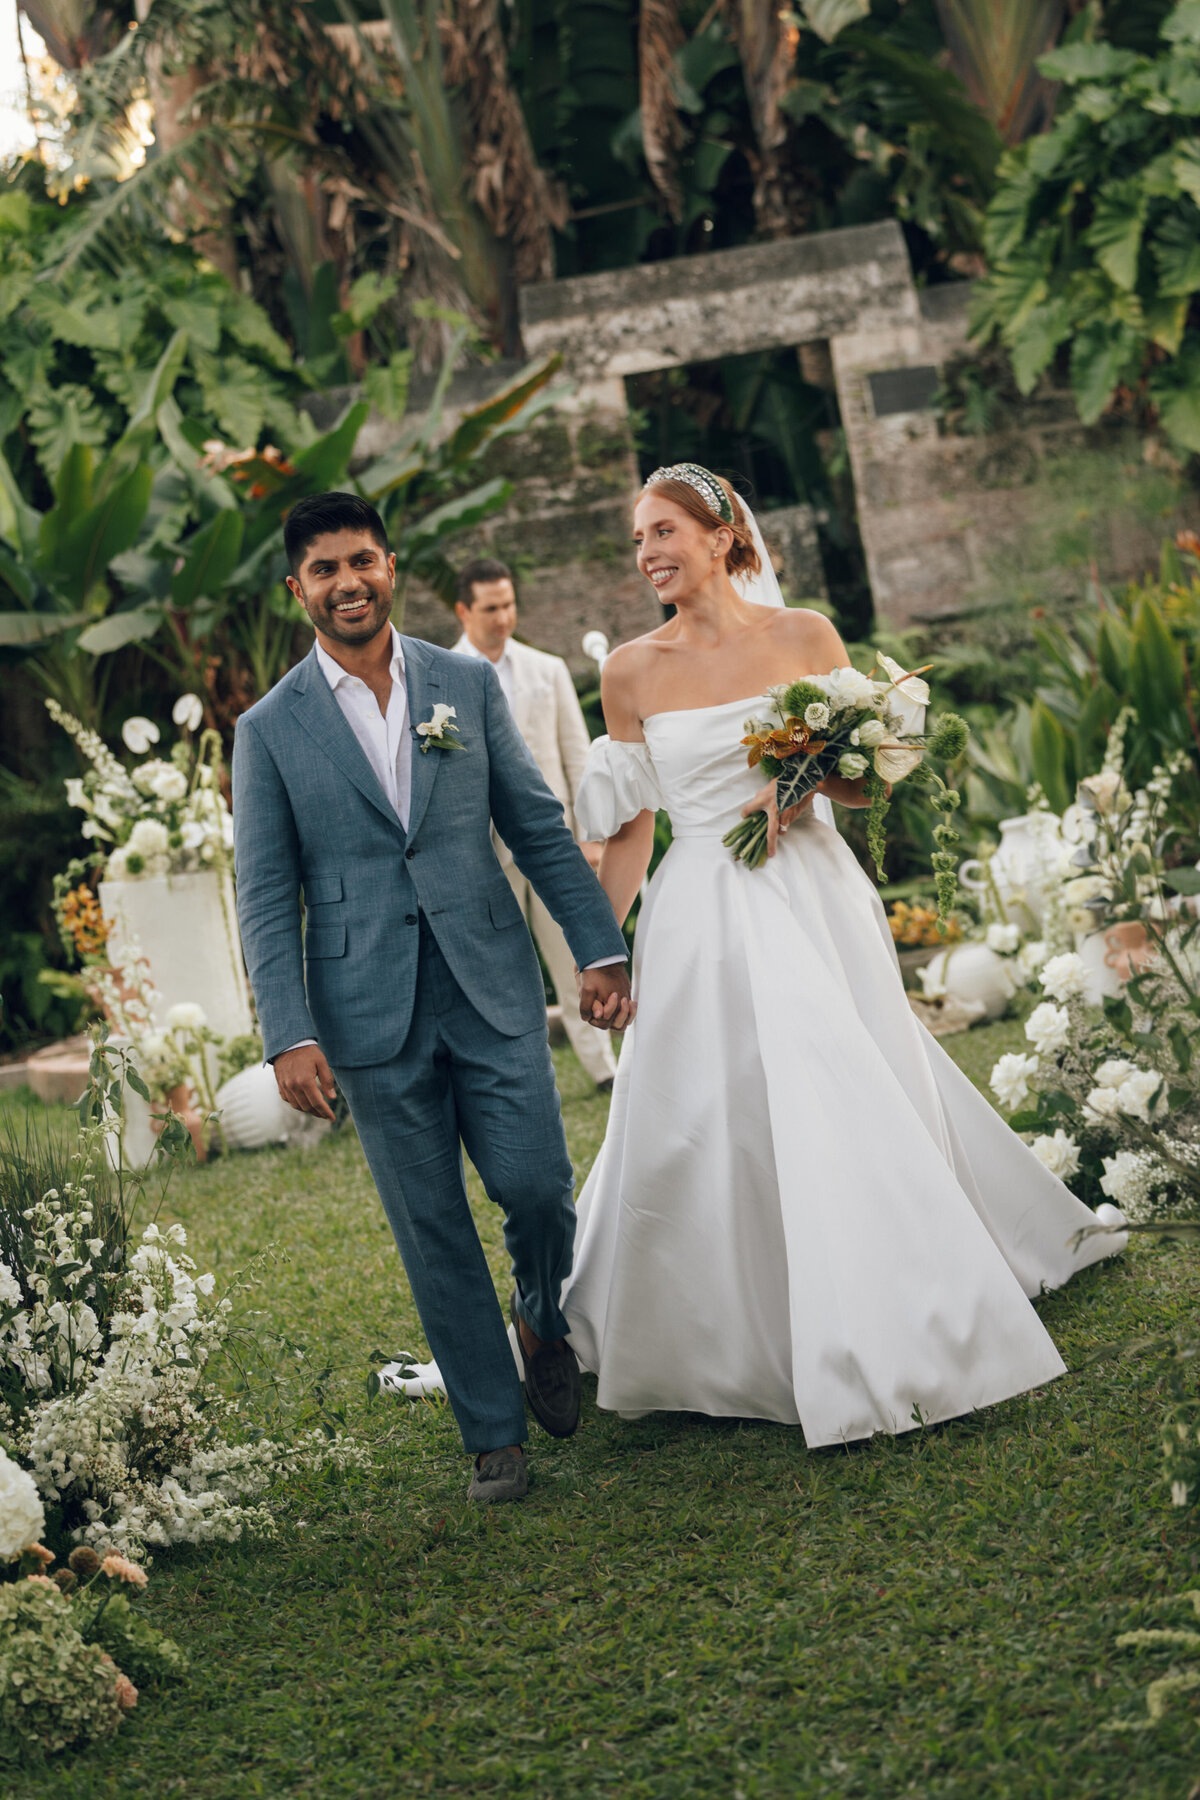 fairchild-botanical-garden-anti-bride-wedding-miami-florida-219